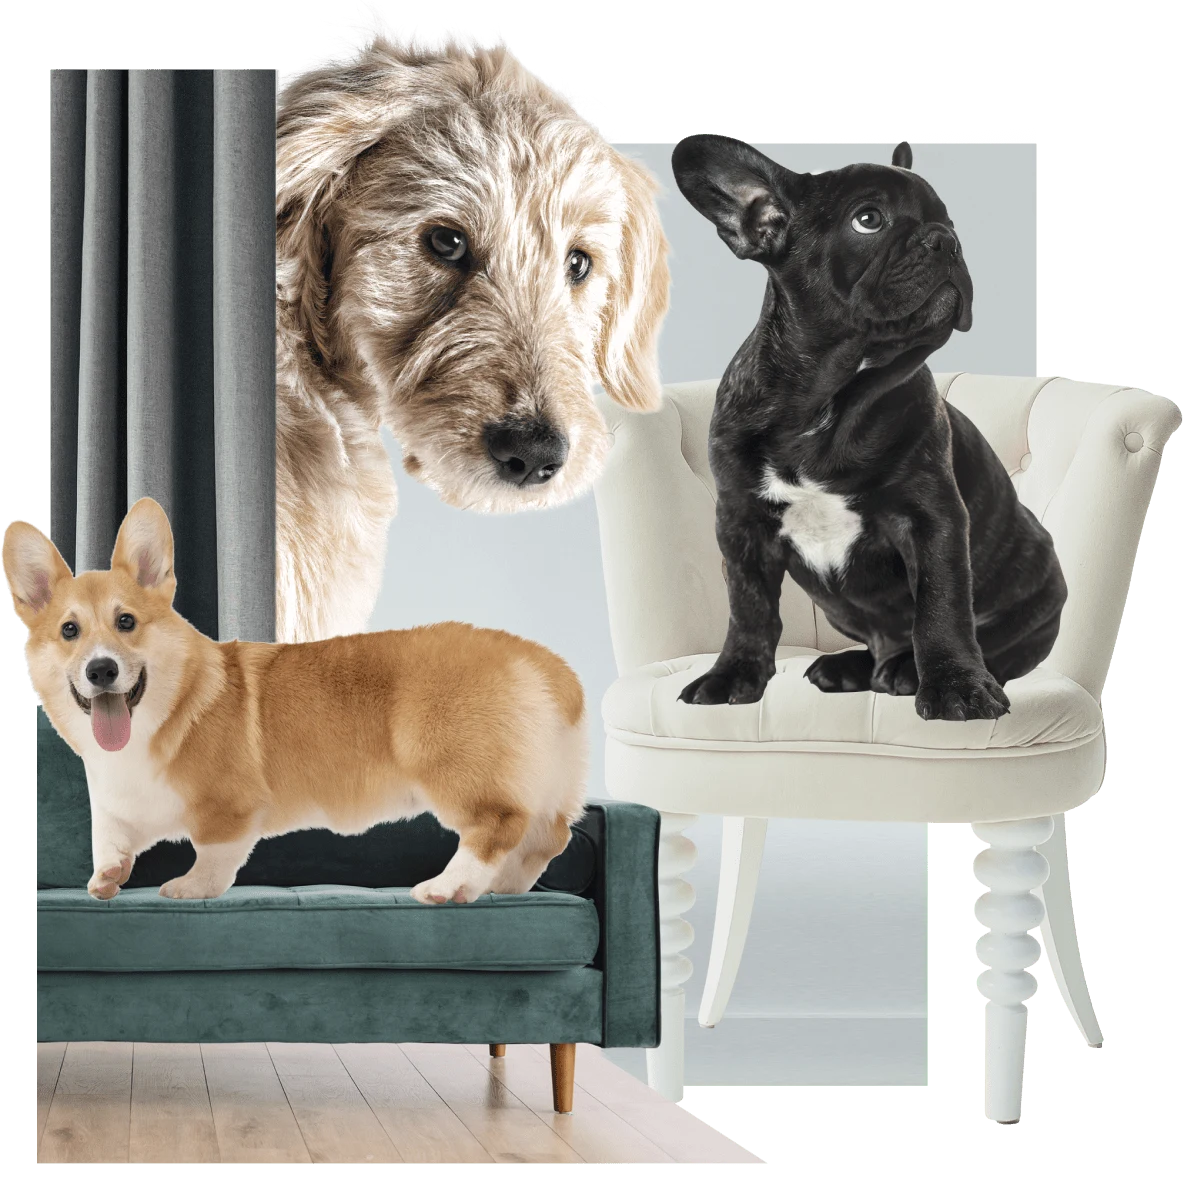 Un perro de raza corgi en un sillón verde a la izquierda. Un bulldog francés en una silla blanca a la derecha. Un lobero irlandés en el fondo detrás de una cortina verde que asoma la cabeza.